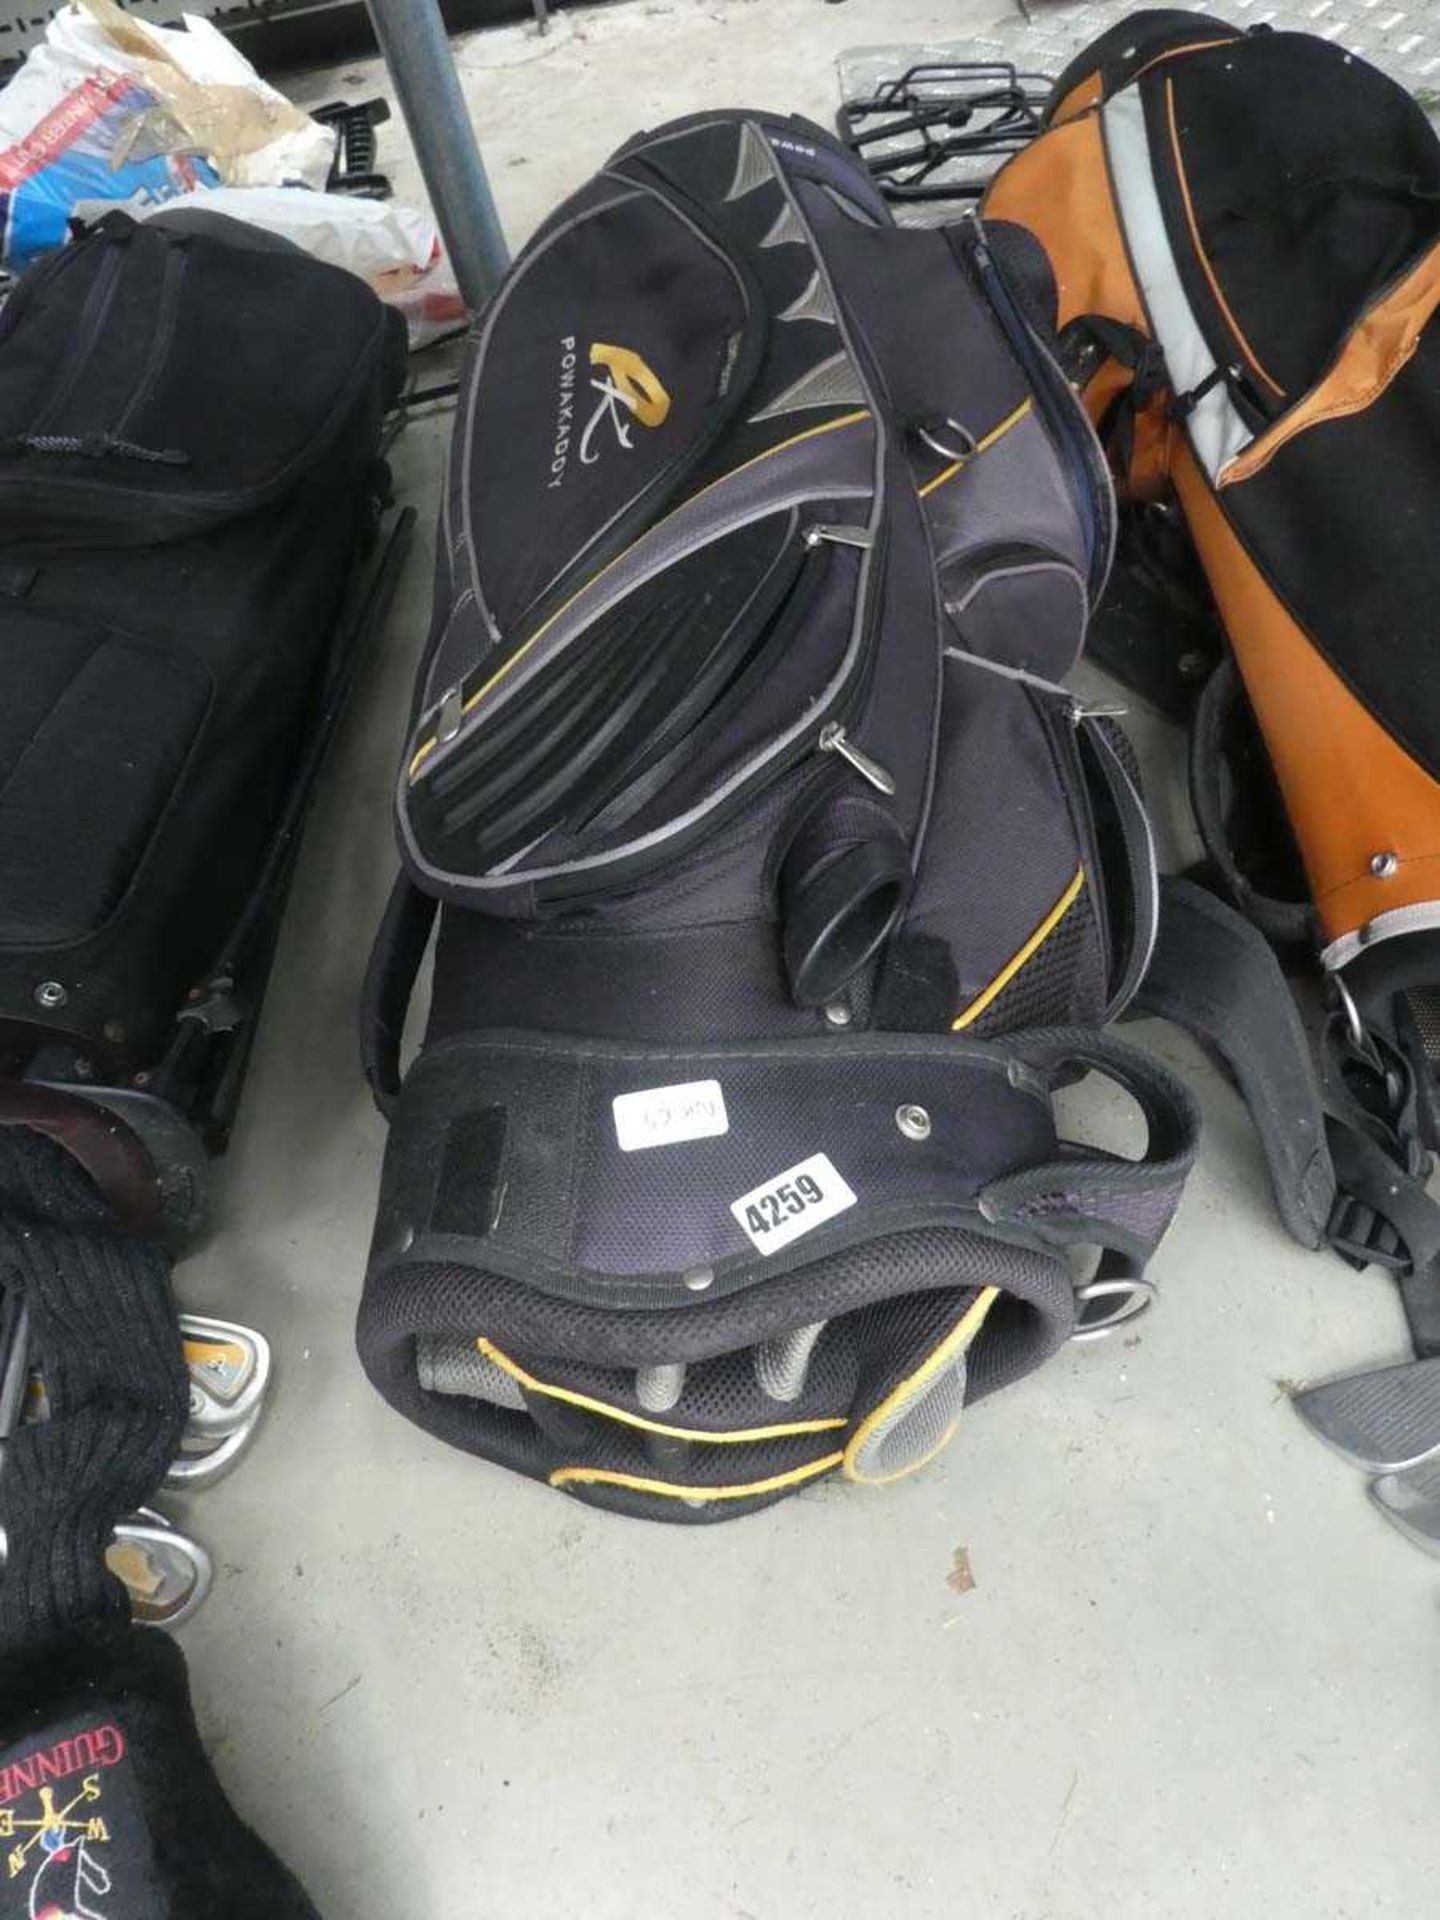 Power Caddy golf bag